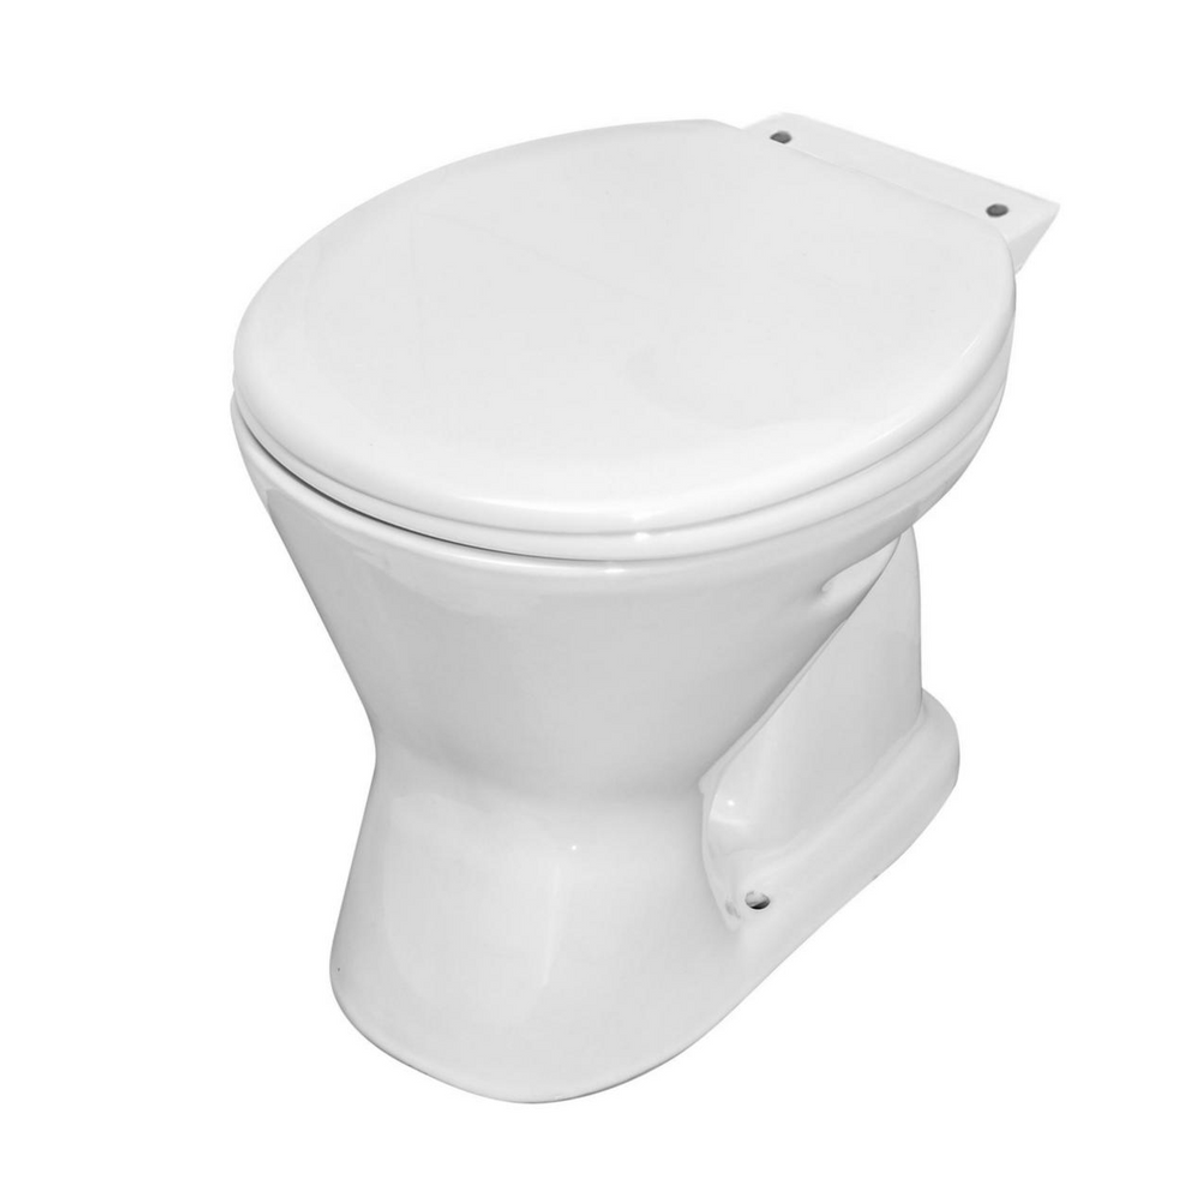 Taza WC 20,5 cm con asiento Kinder blanco Fanaloza